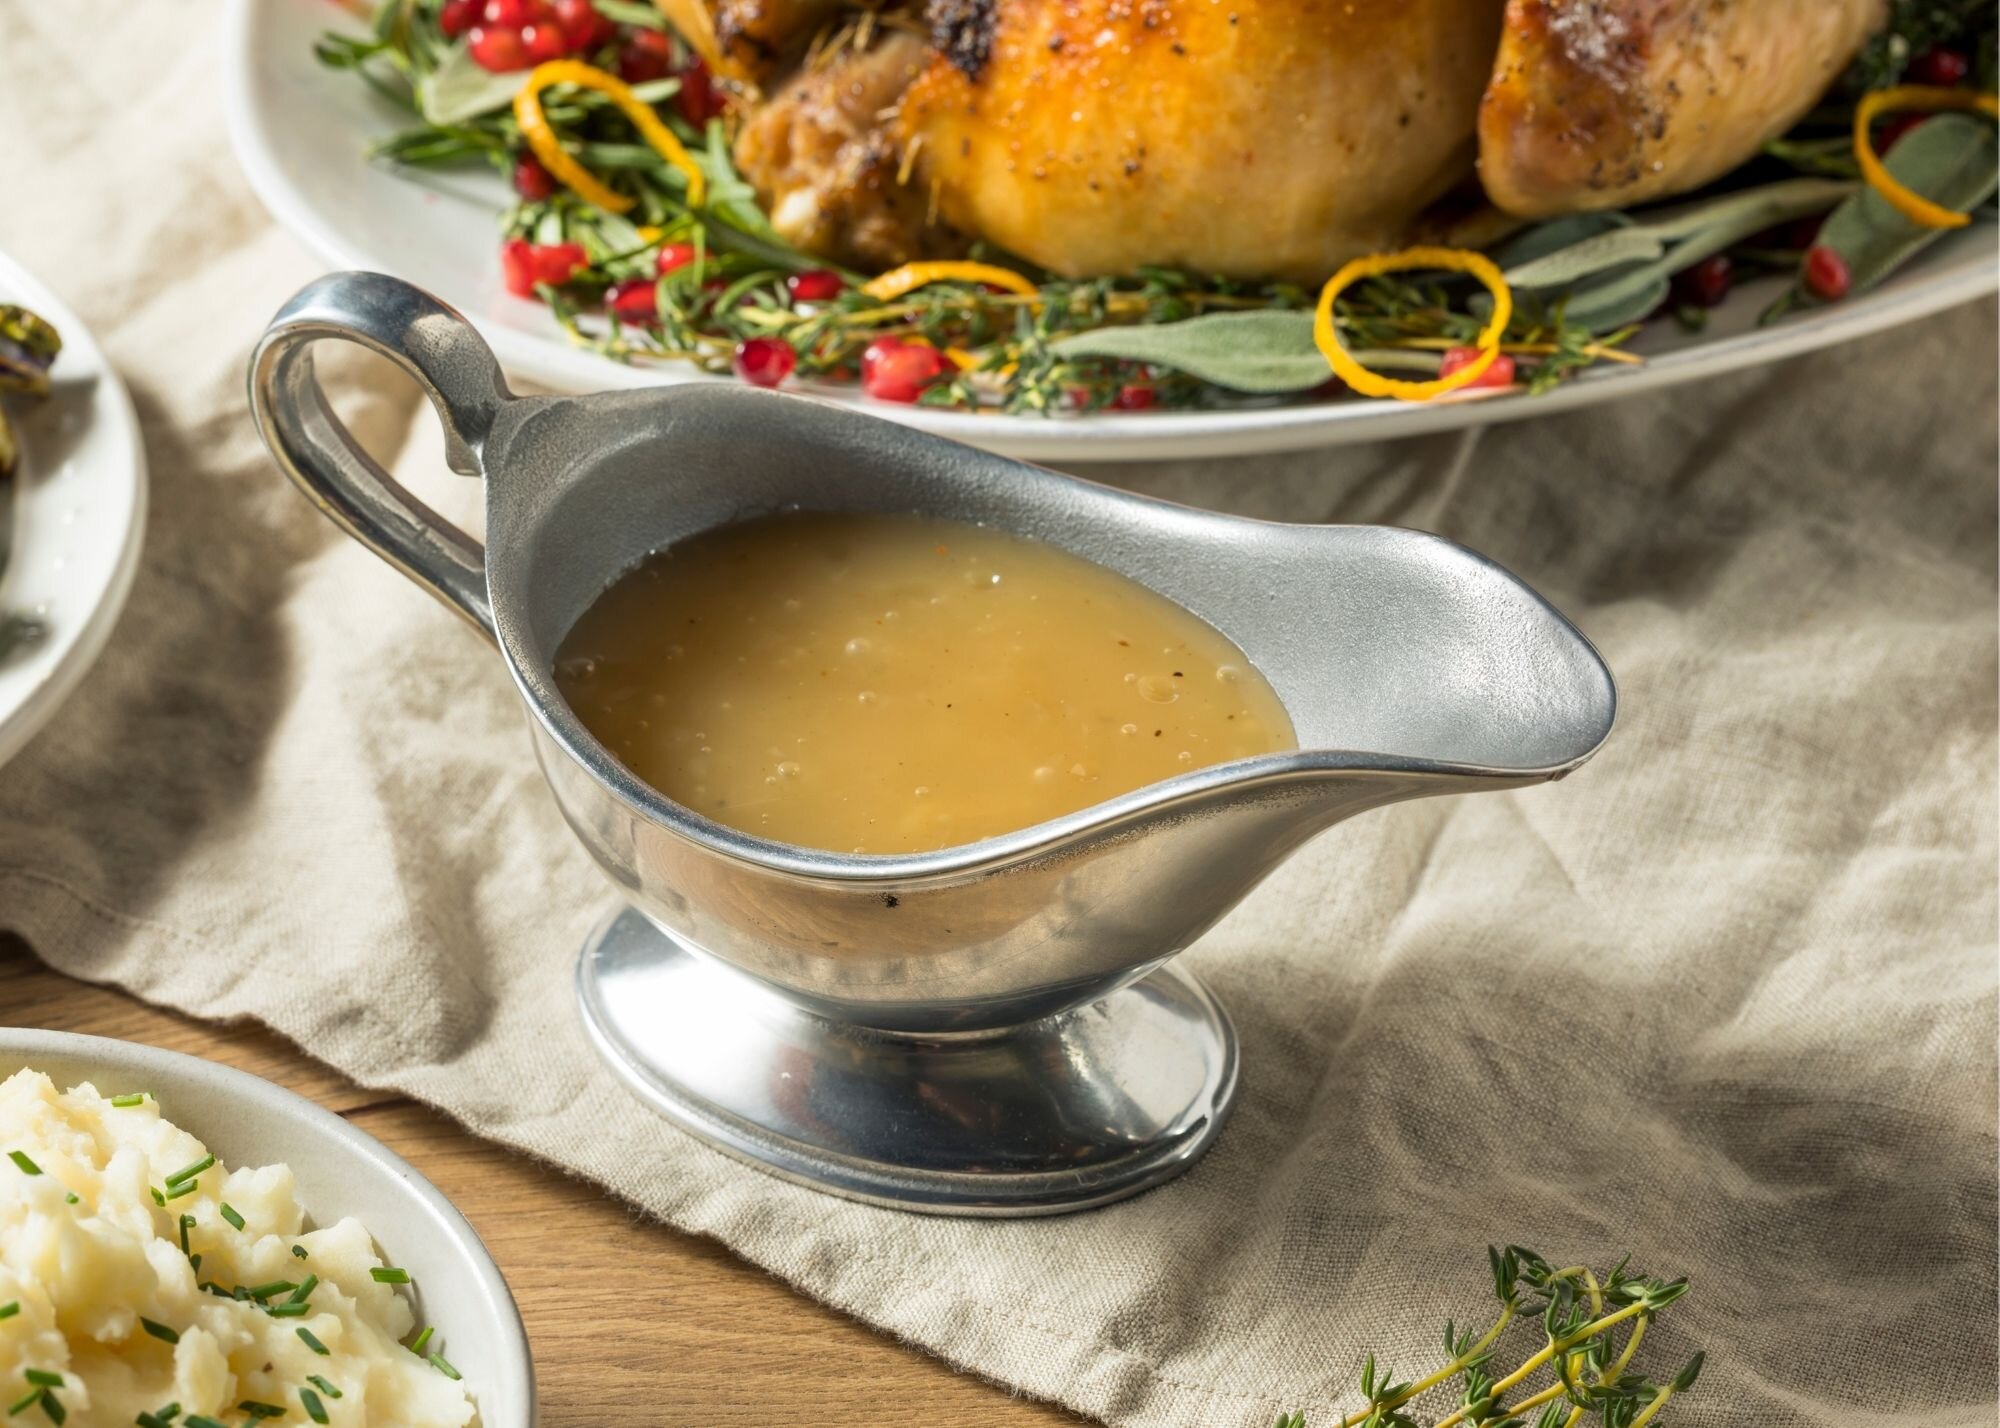 Salsa gravy - Es impensado comer el pavo solo. Para una buena cena de Acción de Gracias, no podemos olvidarnos de la salsa gravy. Es otro de esos componentes imprescindibles del menú para el que cada familia guarda su secreto.